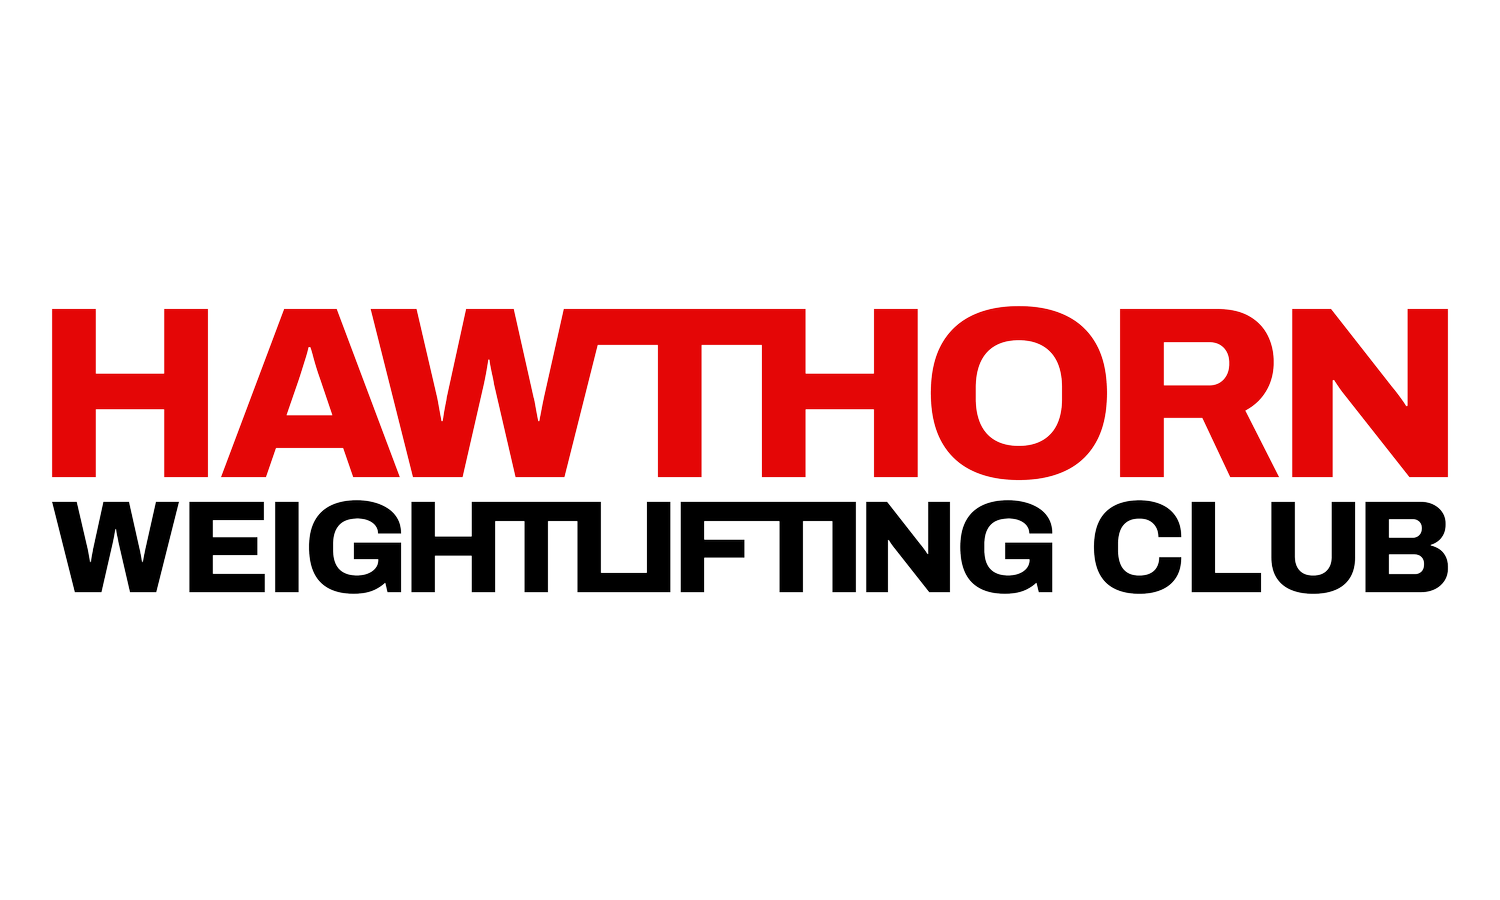 Hawthorn Weightlifting Club